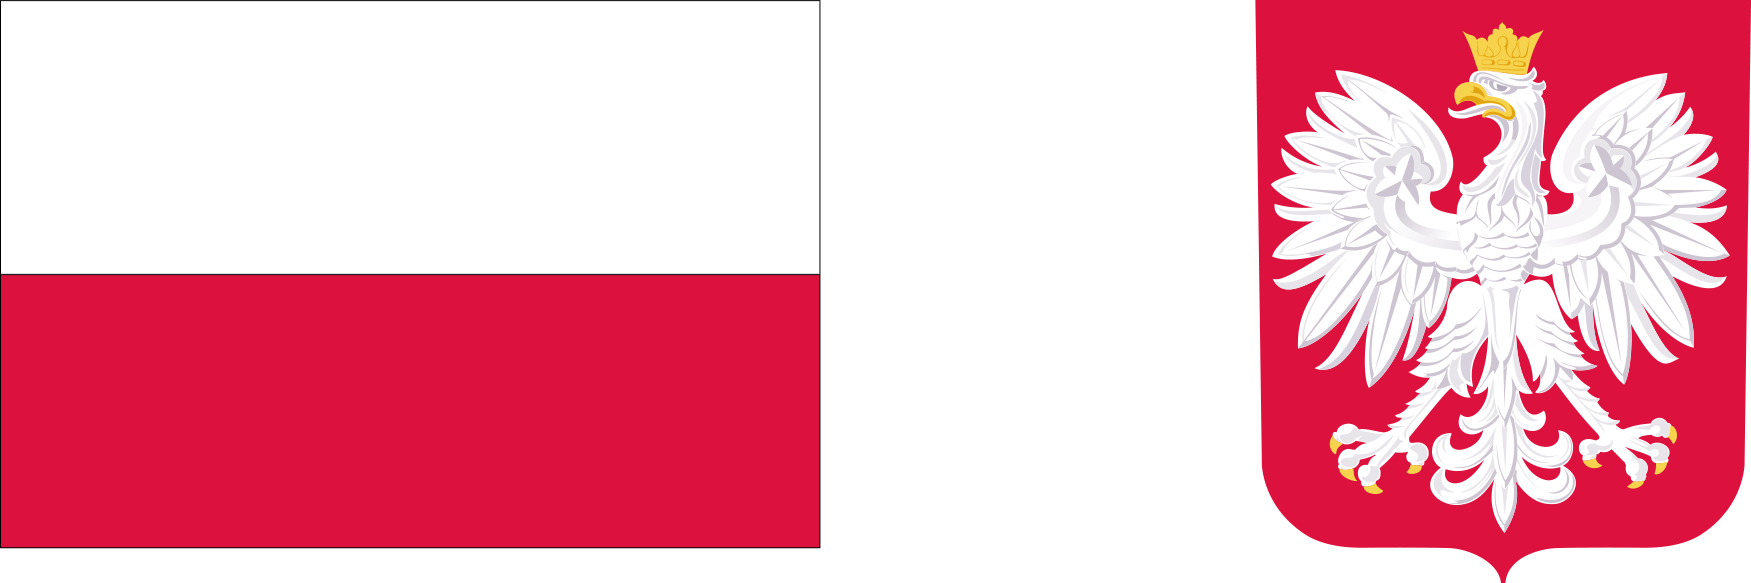 Obrazek zawiera flagę i godło Polski